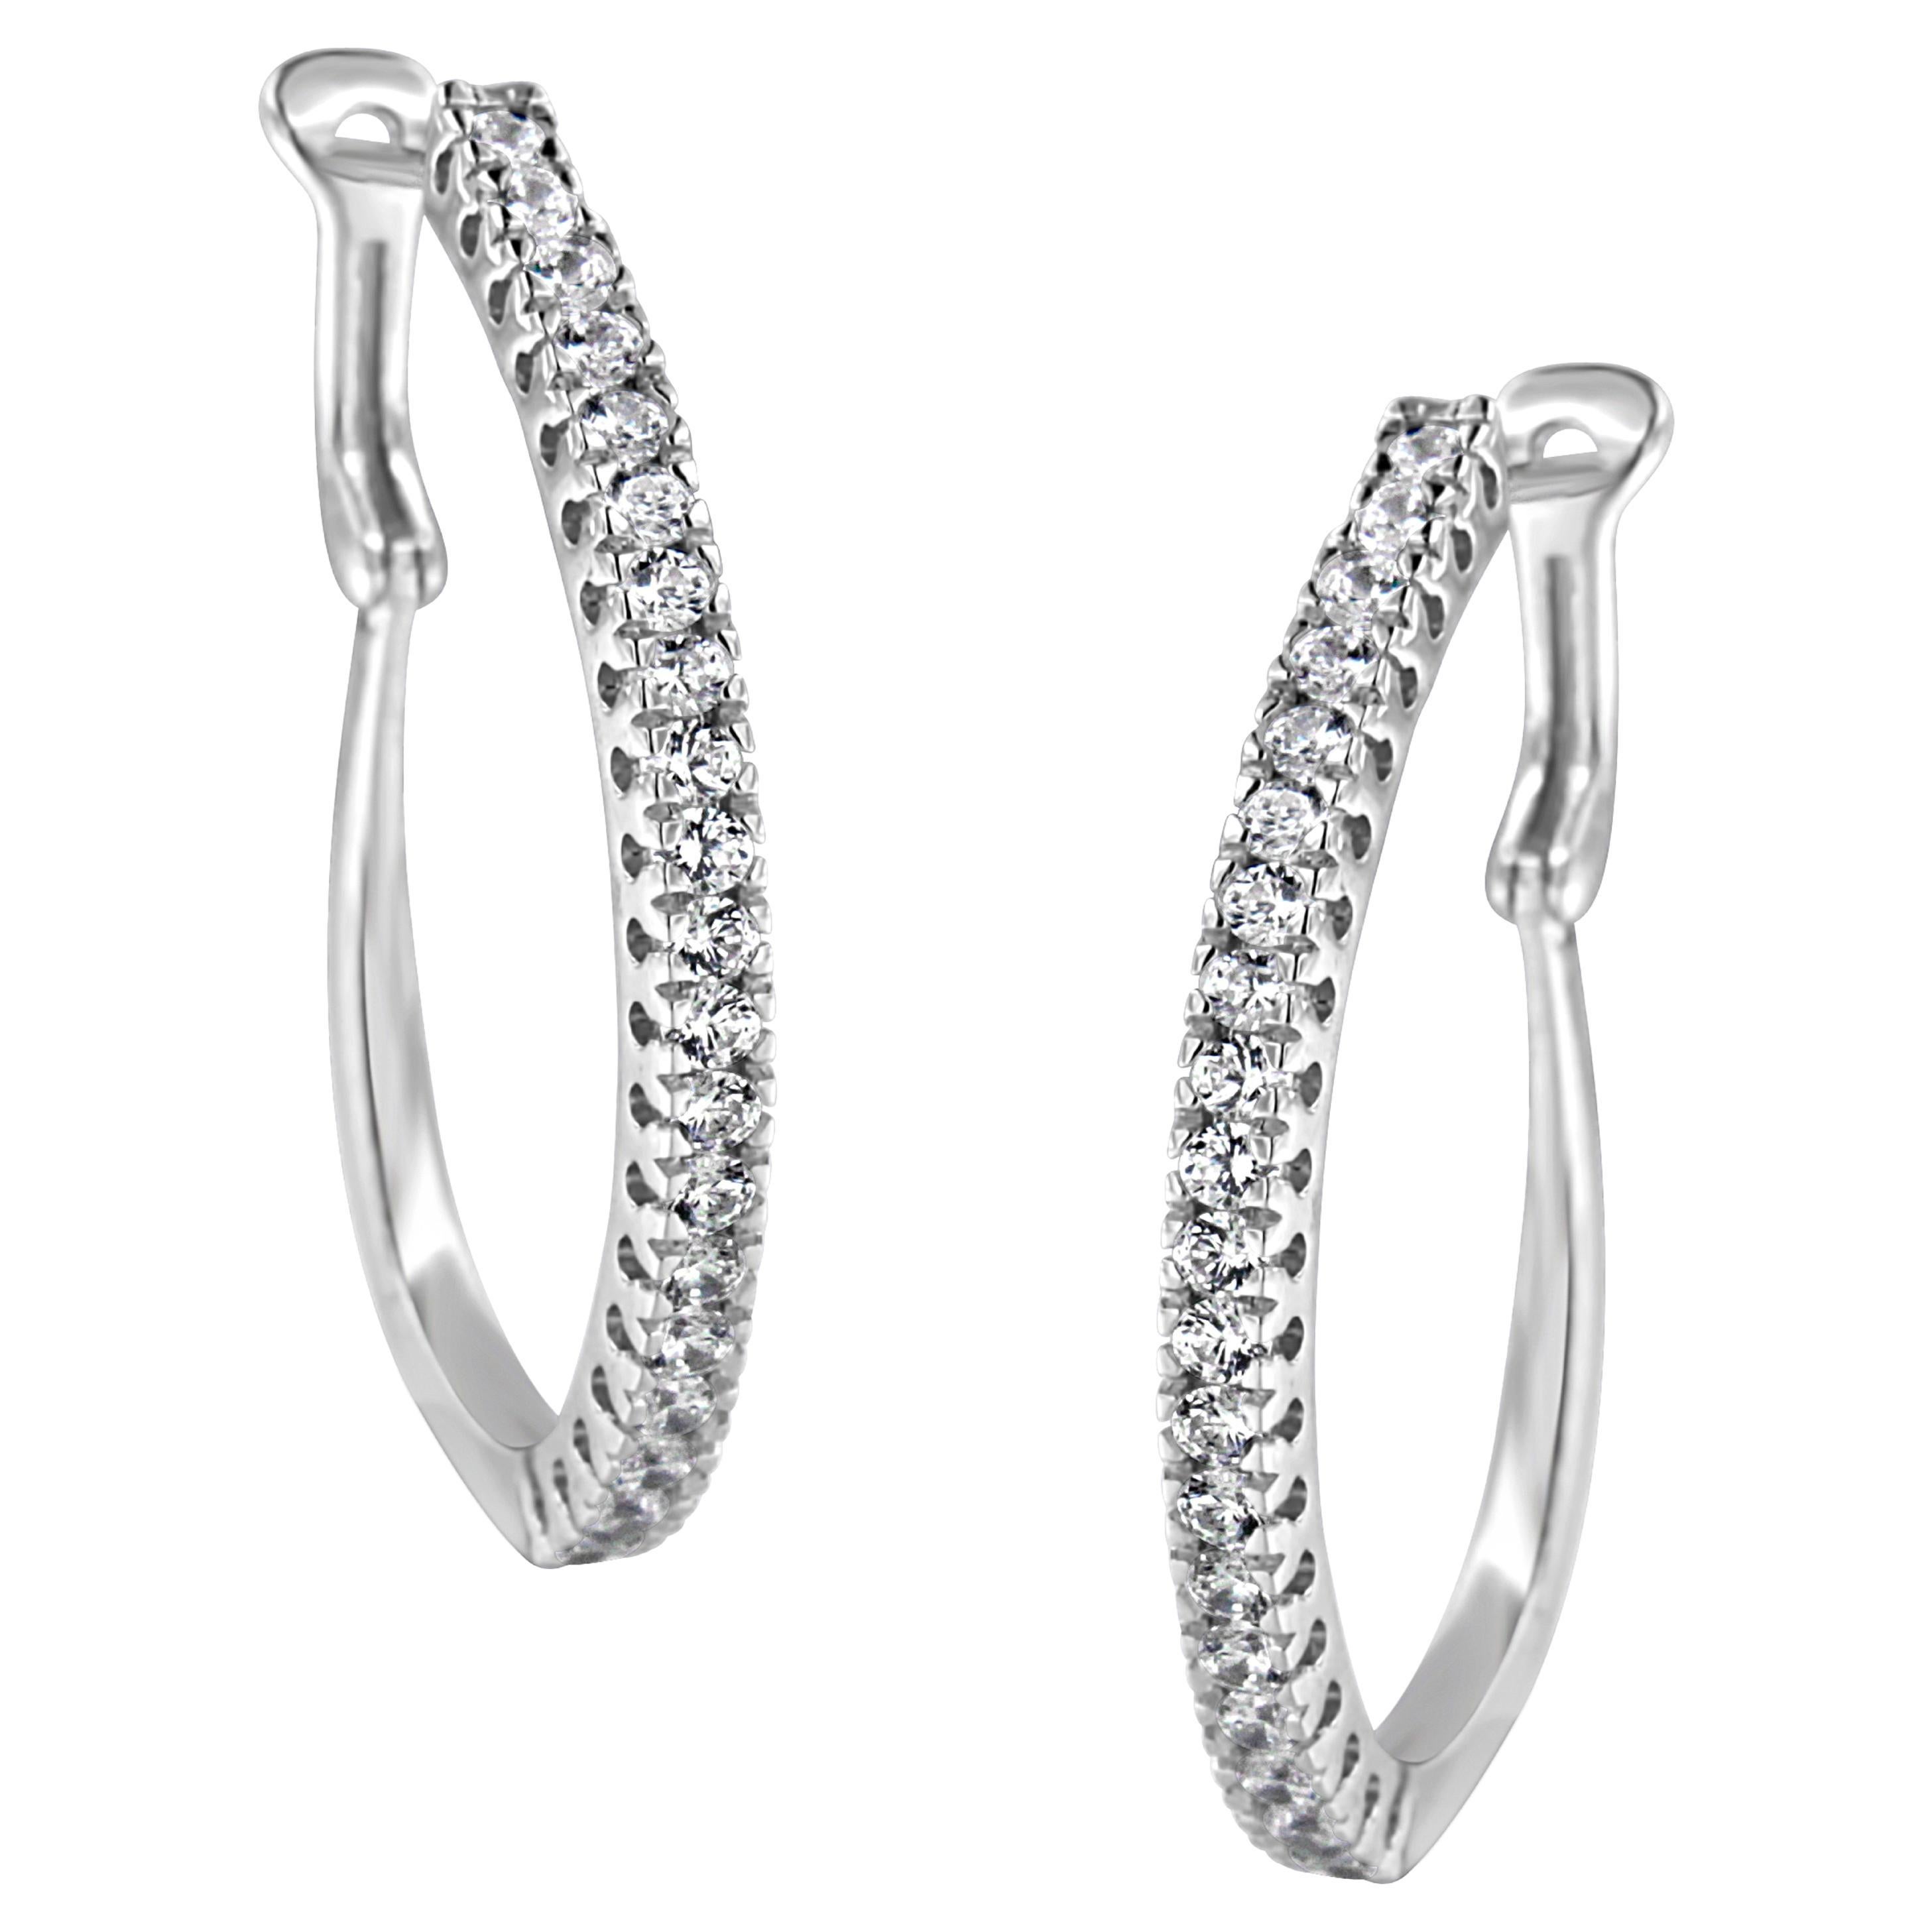 10Kt White Gold 1.0 Carat Diamond Hoop Earrings